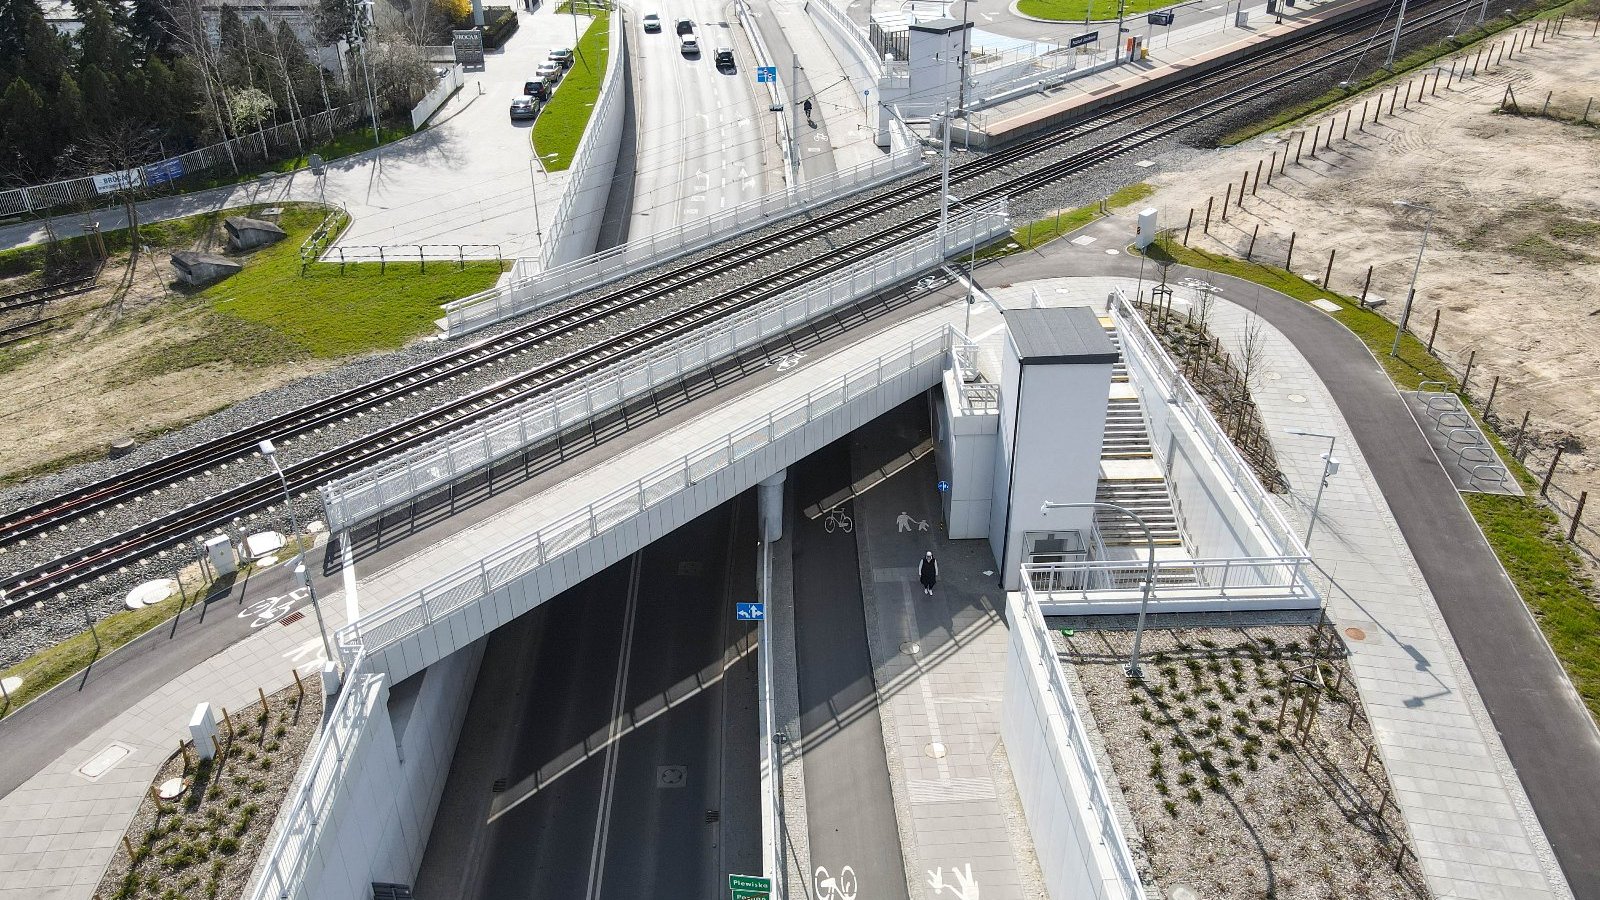 Zdjęcie przedstawia wiadukt kolejowy na jezdnią, drogą rowerową i chodnikiem. Na fotografii widać także windę.